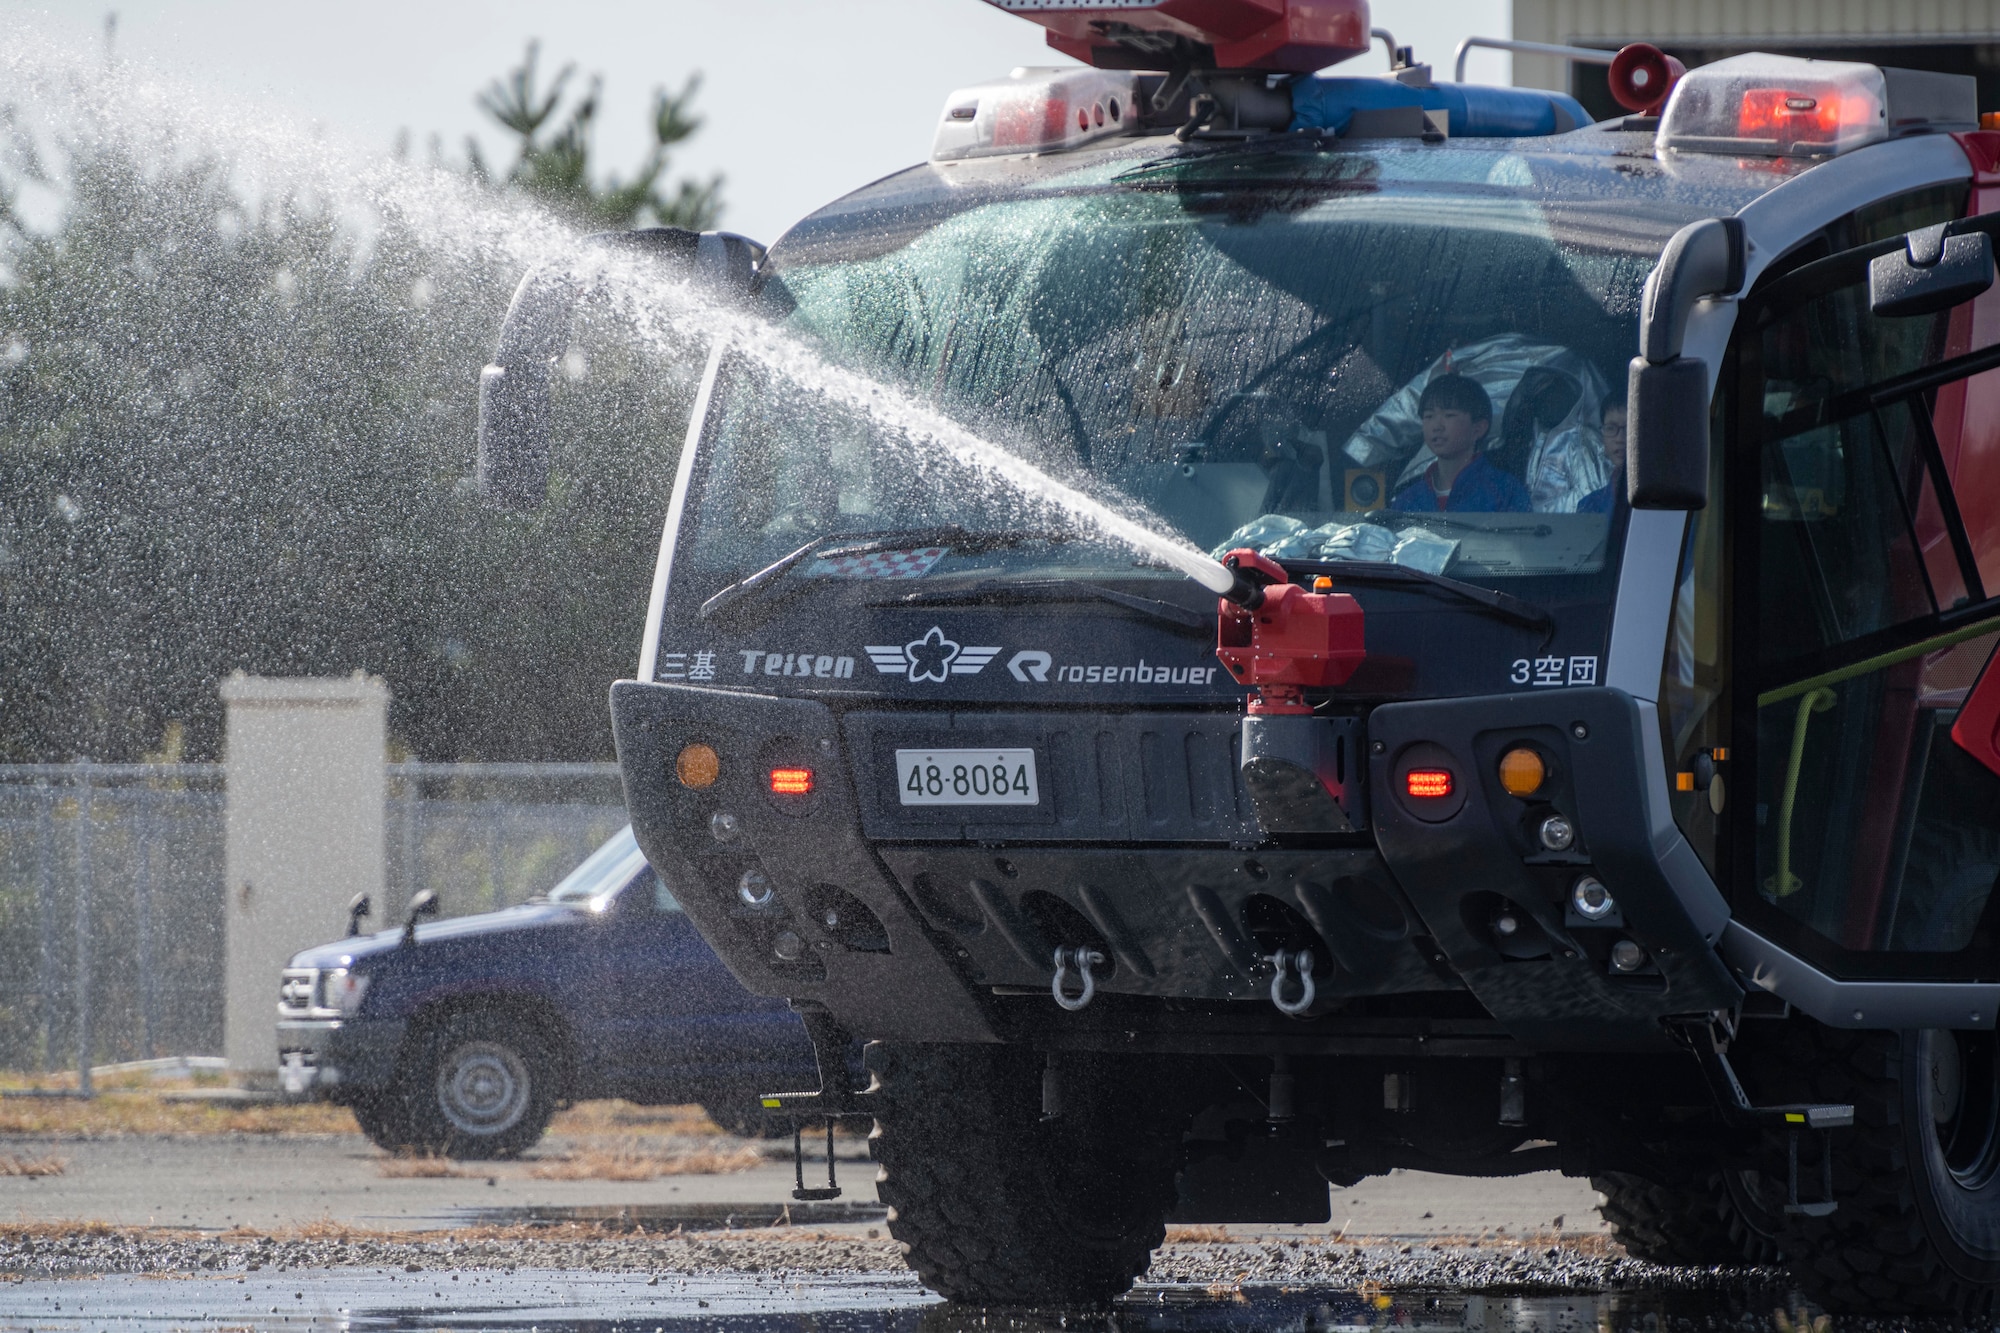 A fire truck spraying water.